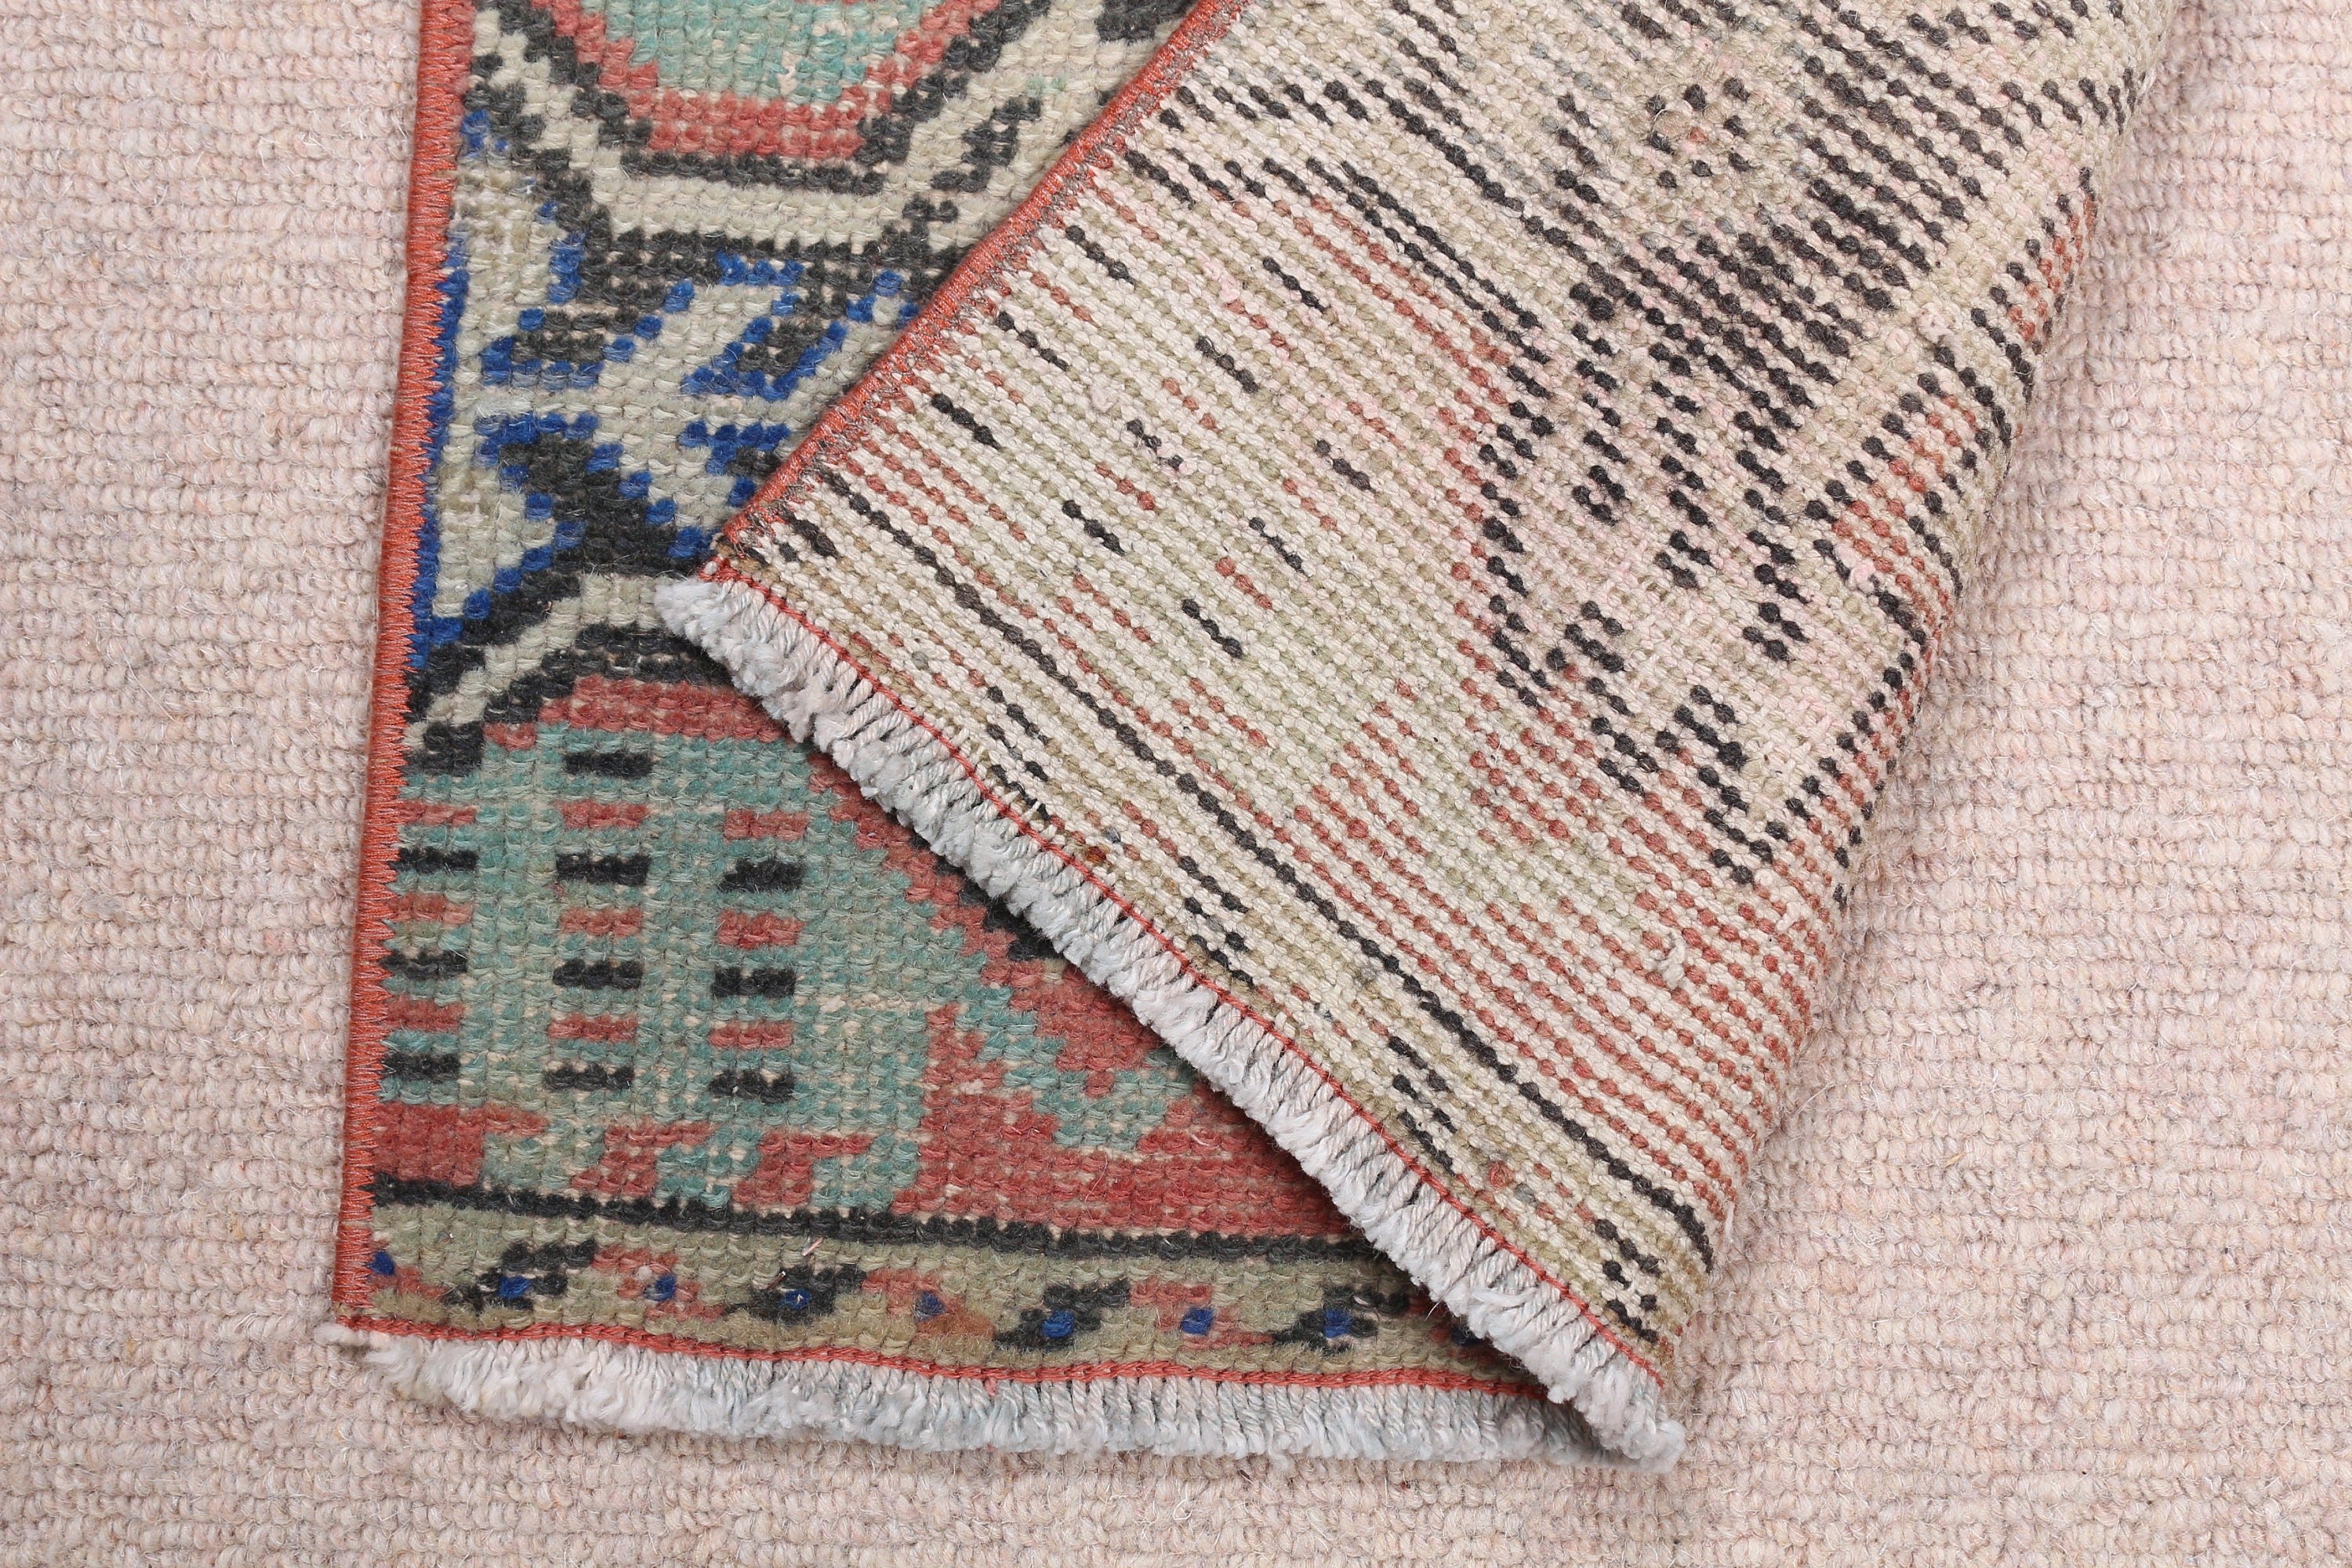 Moroccan Rugs, Bedroom Rug, Vintage Rug, Red Moroccan Rug, 1.3x3 ft Small Rugs, Oriental Rugs, Rugs for Entry, Turkish Rugs, Nursery Rug